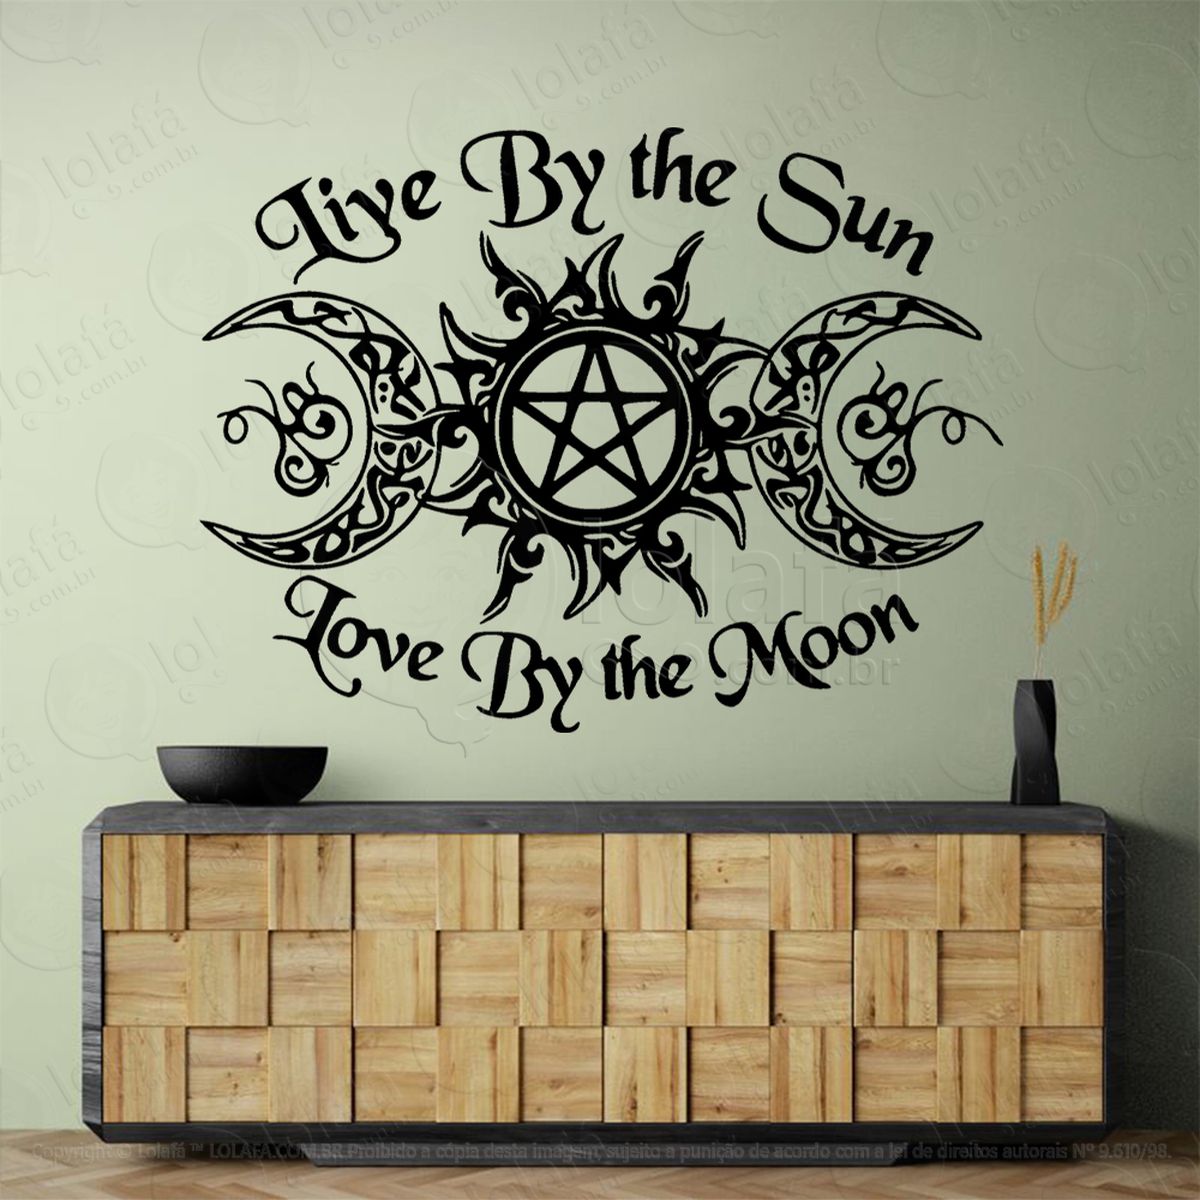 live by the sun triluna viver pelo sol viver pela lua adesivo de parede decorativo para casa, sala, quarto, vidro e altar ocultista - mod:195